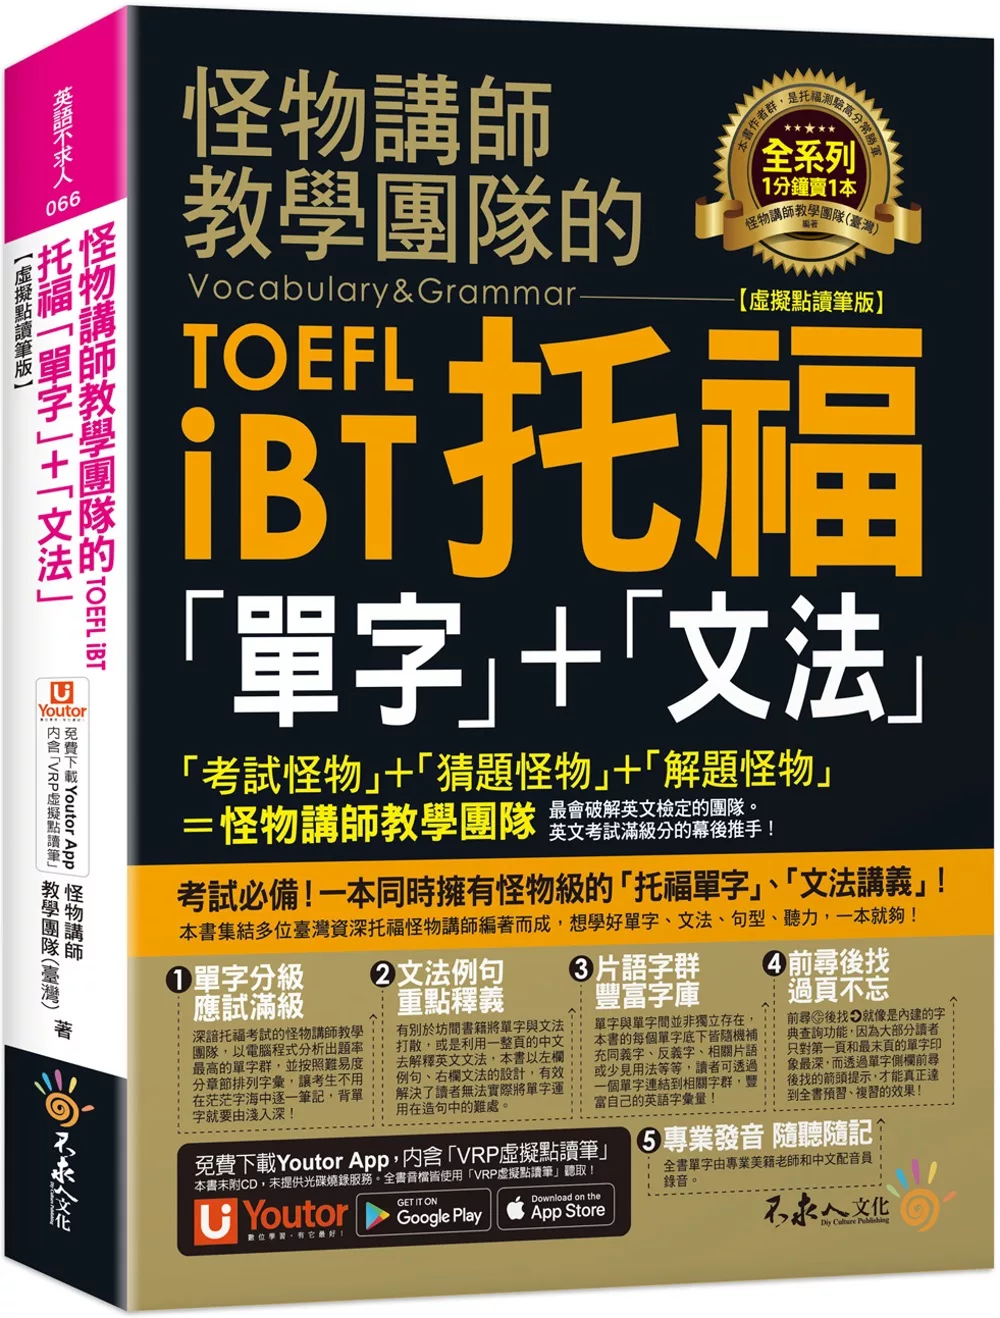 怪物講師教學團隊的TOEFL iBT托福「單字」+「文法」【虛擬點讀筆版】(免費附贈「Youtor App」內含VRP虛擬點讀筆)(二版)